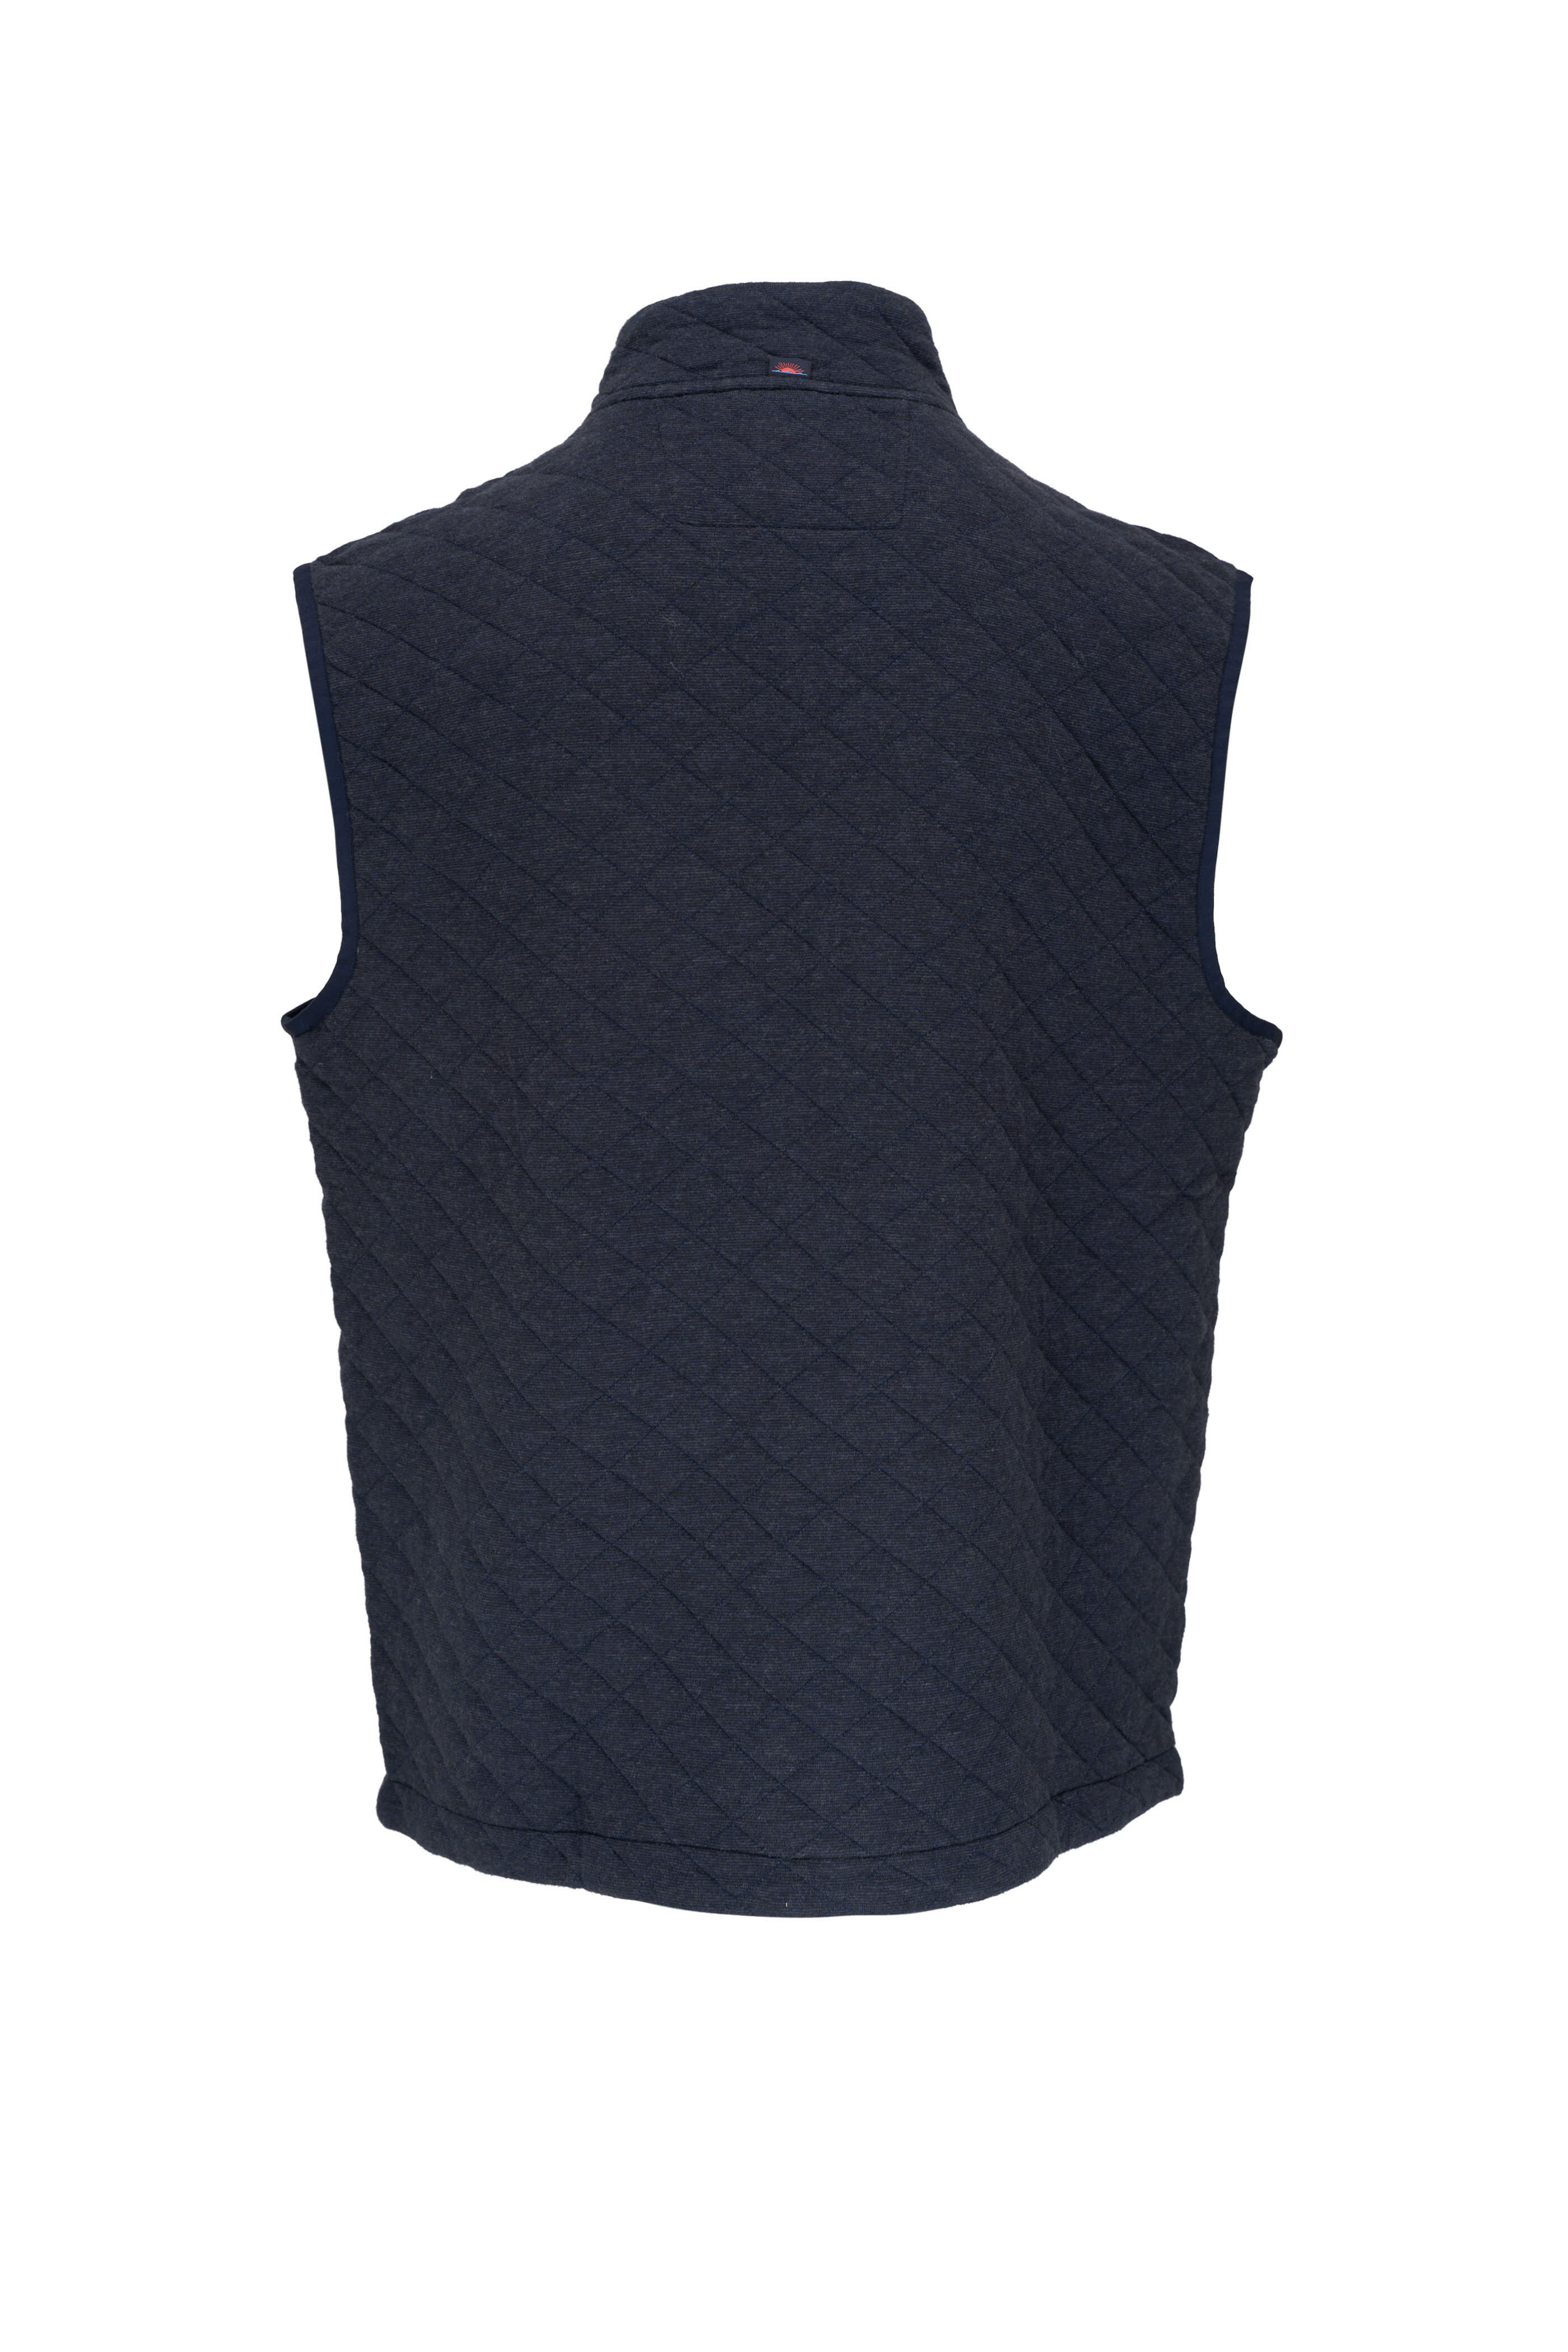 Faherty Brand - Epic Navy Melange Quilted Fleece Vest